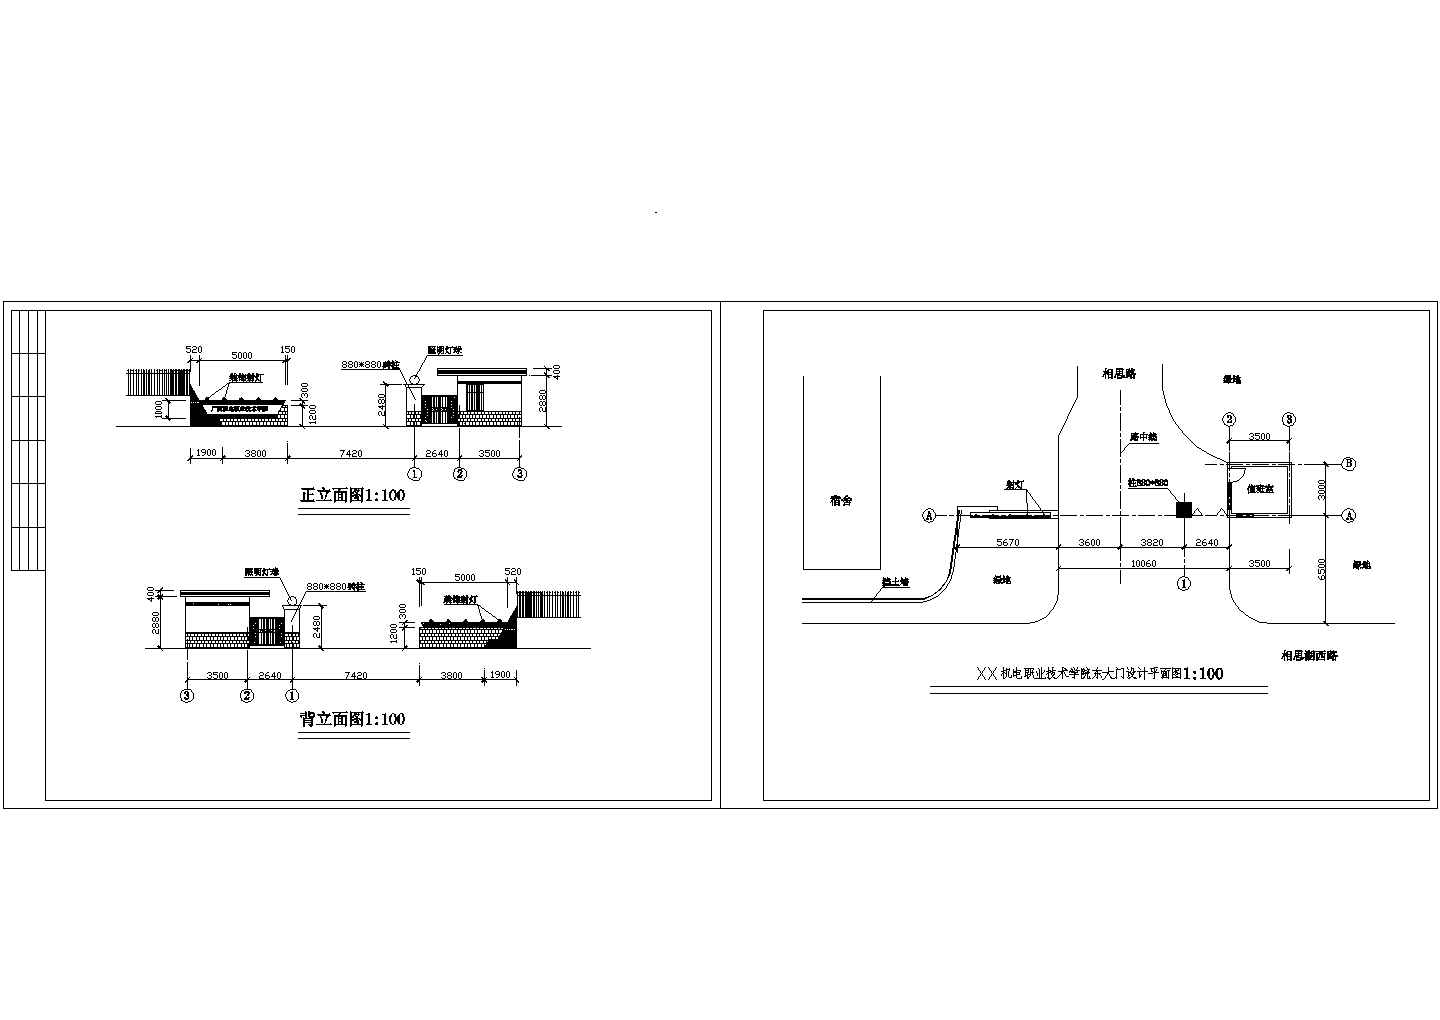 机电学院大门值班室建筑方案设计CAD图纸